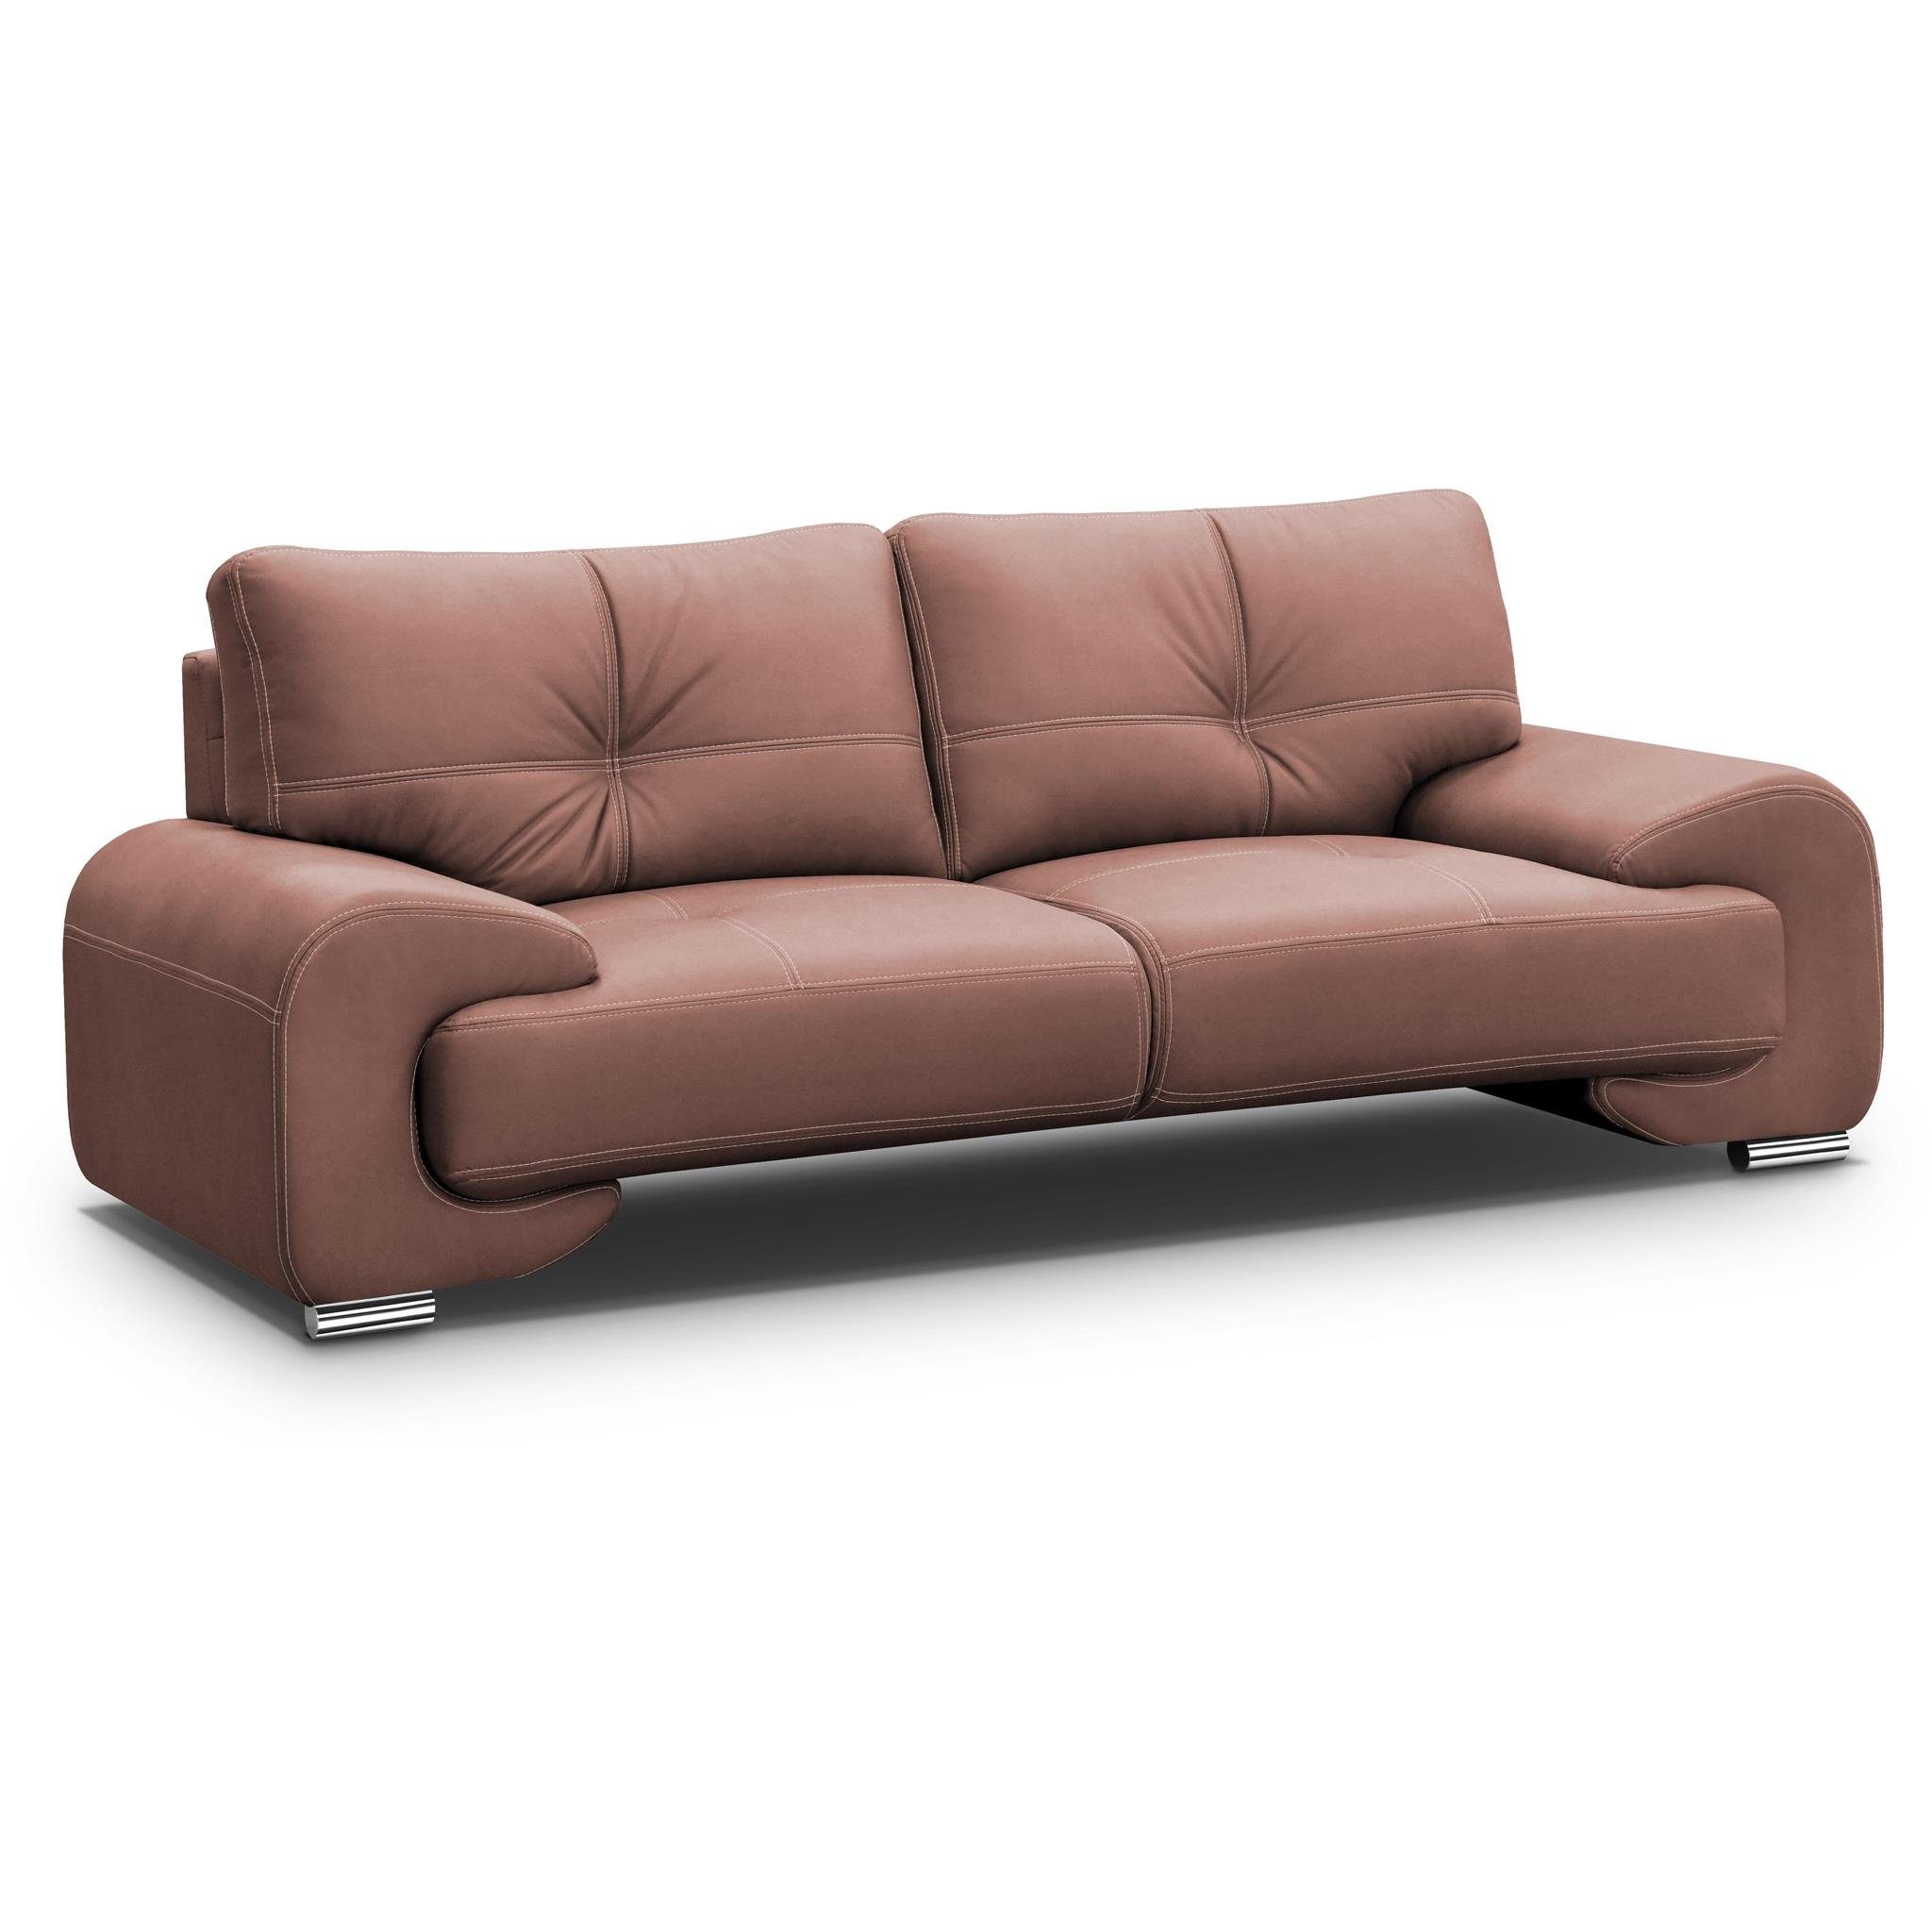 Beautysofa 3-Sitzer Maxime lux, 3-Sitzer Sofa im modernes Design, mit Wellenunterfederung, mit dekorativen Nähten, Kunstleder, Dreisitzer Ginger (vega 56)